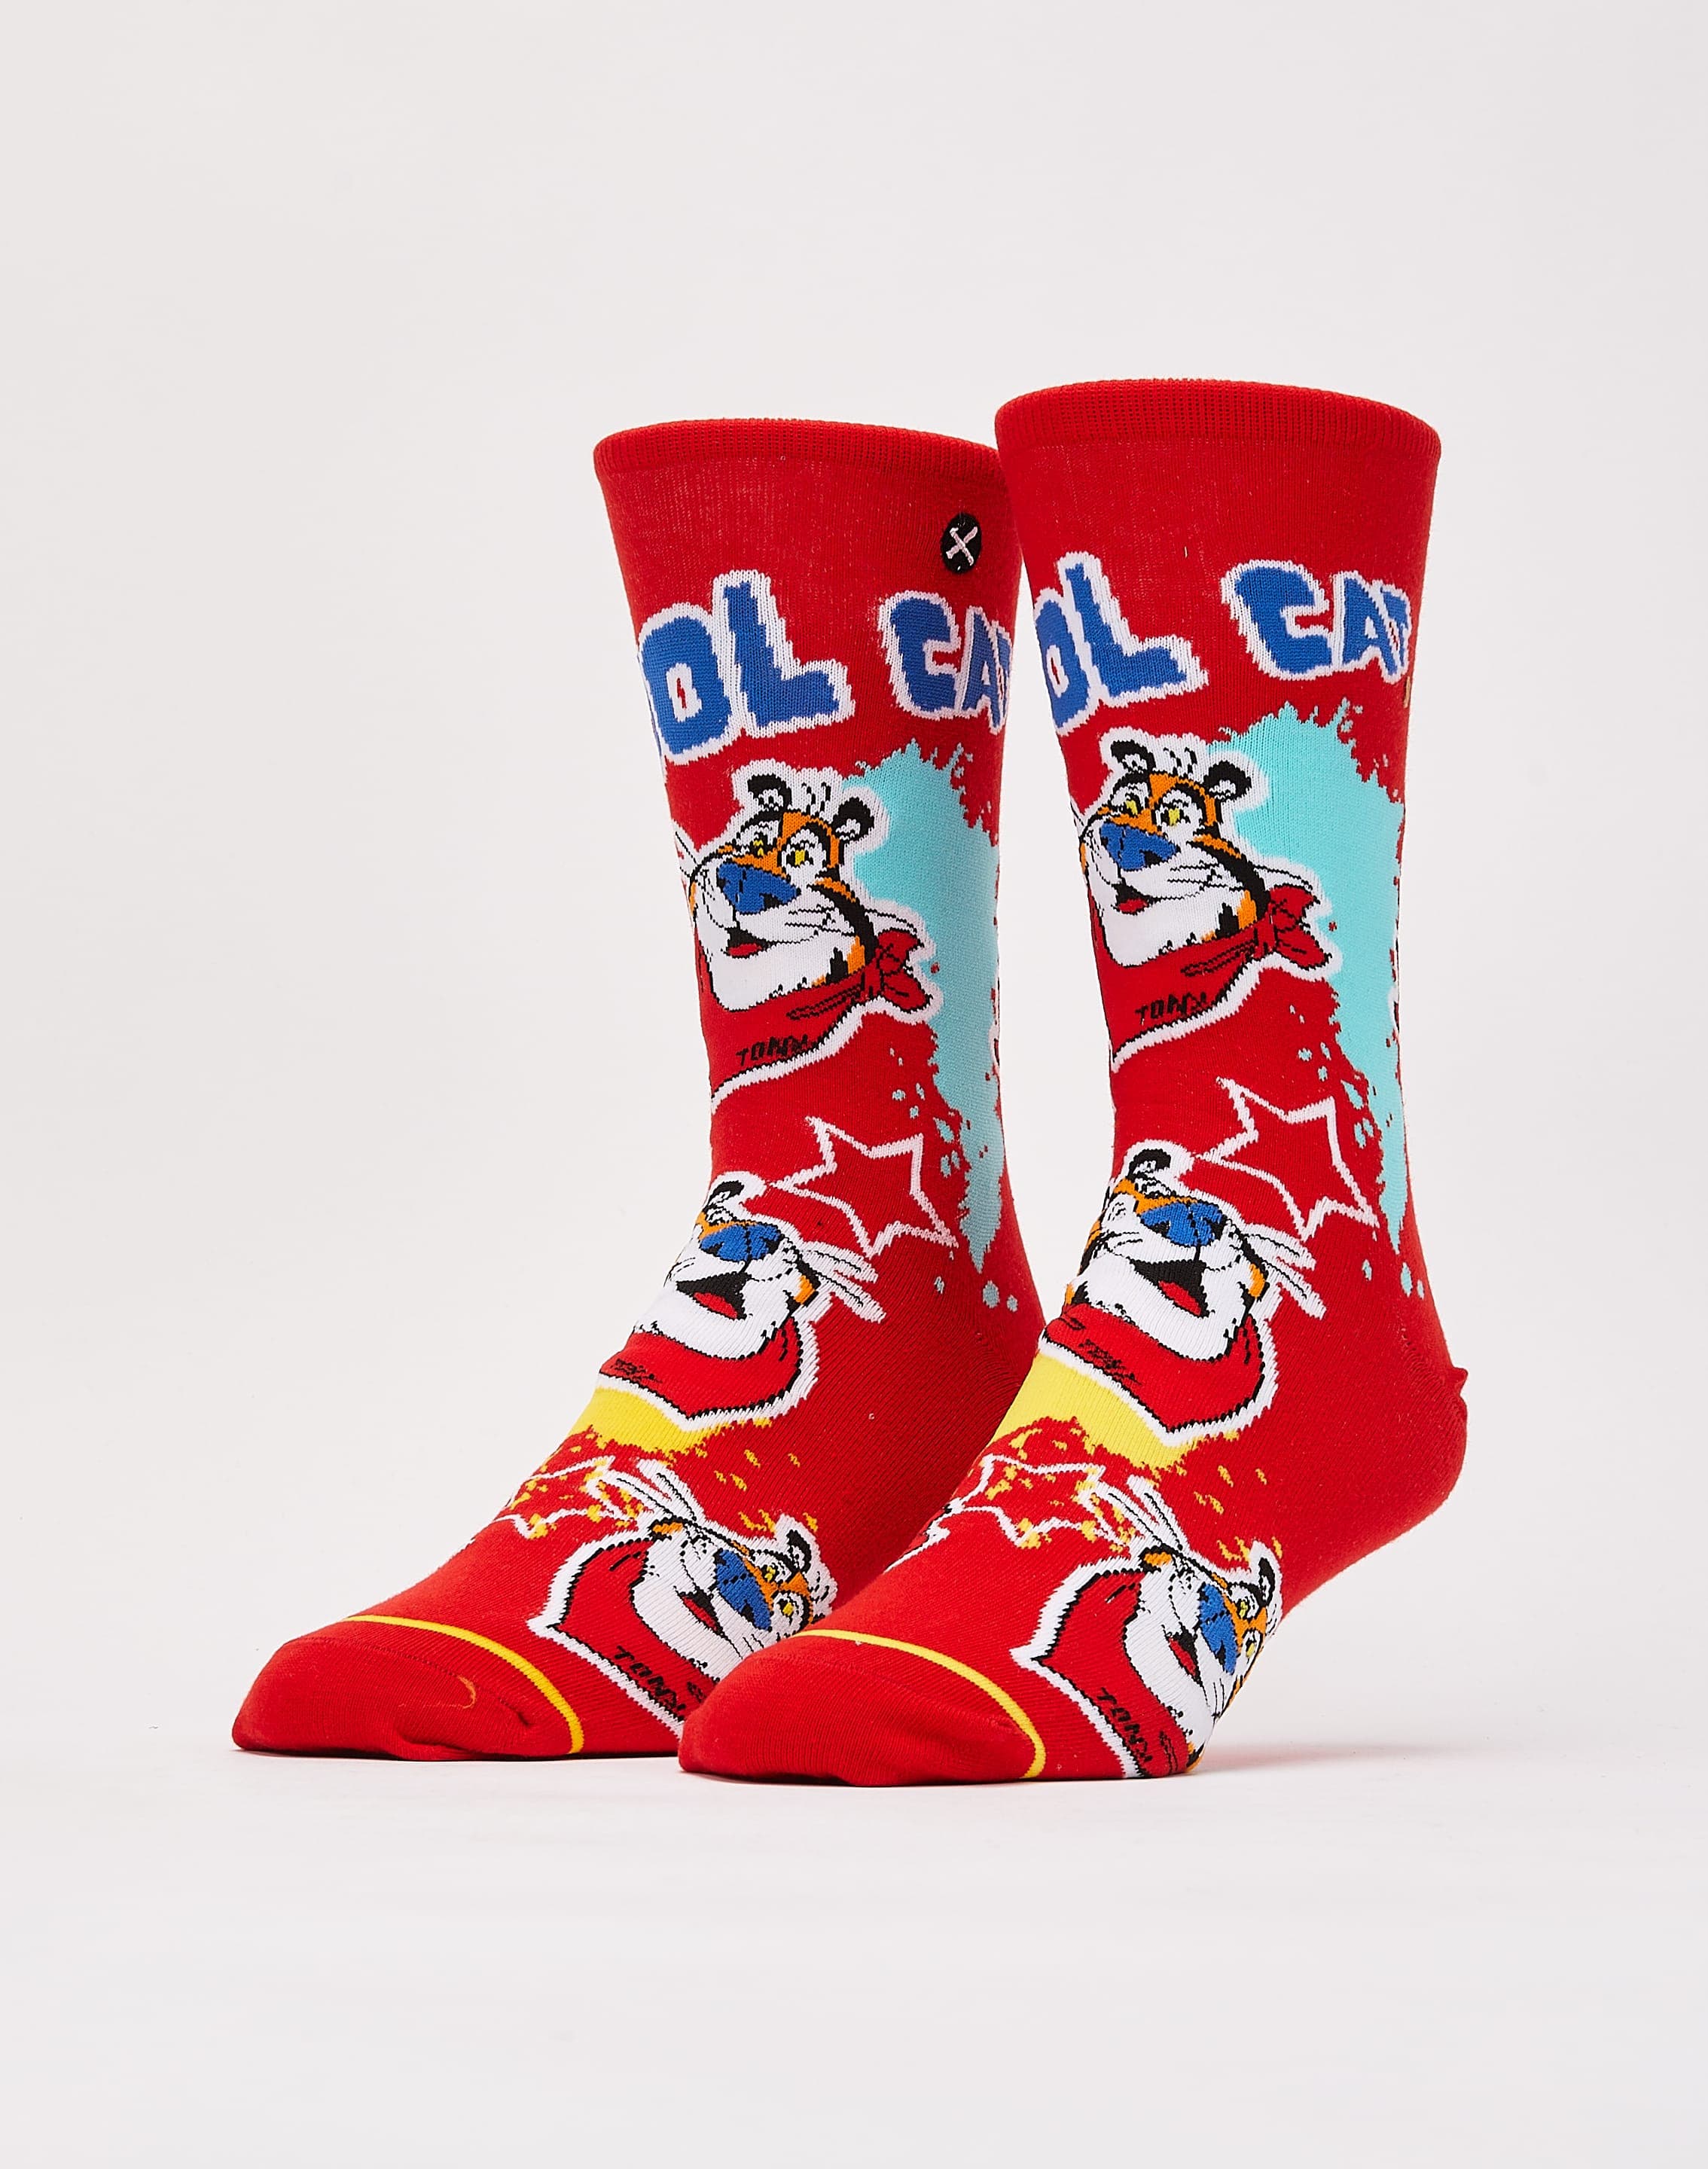 Odd Sox Cool Cat Crew Socks